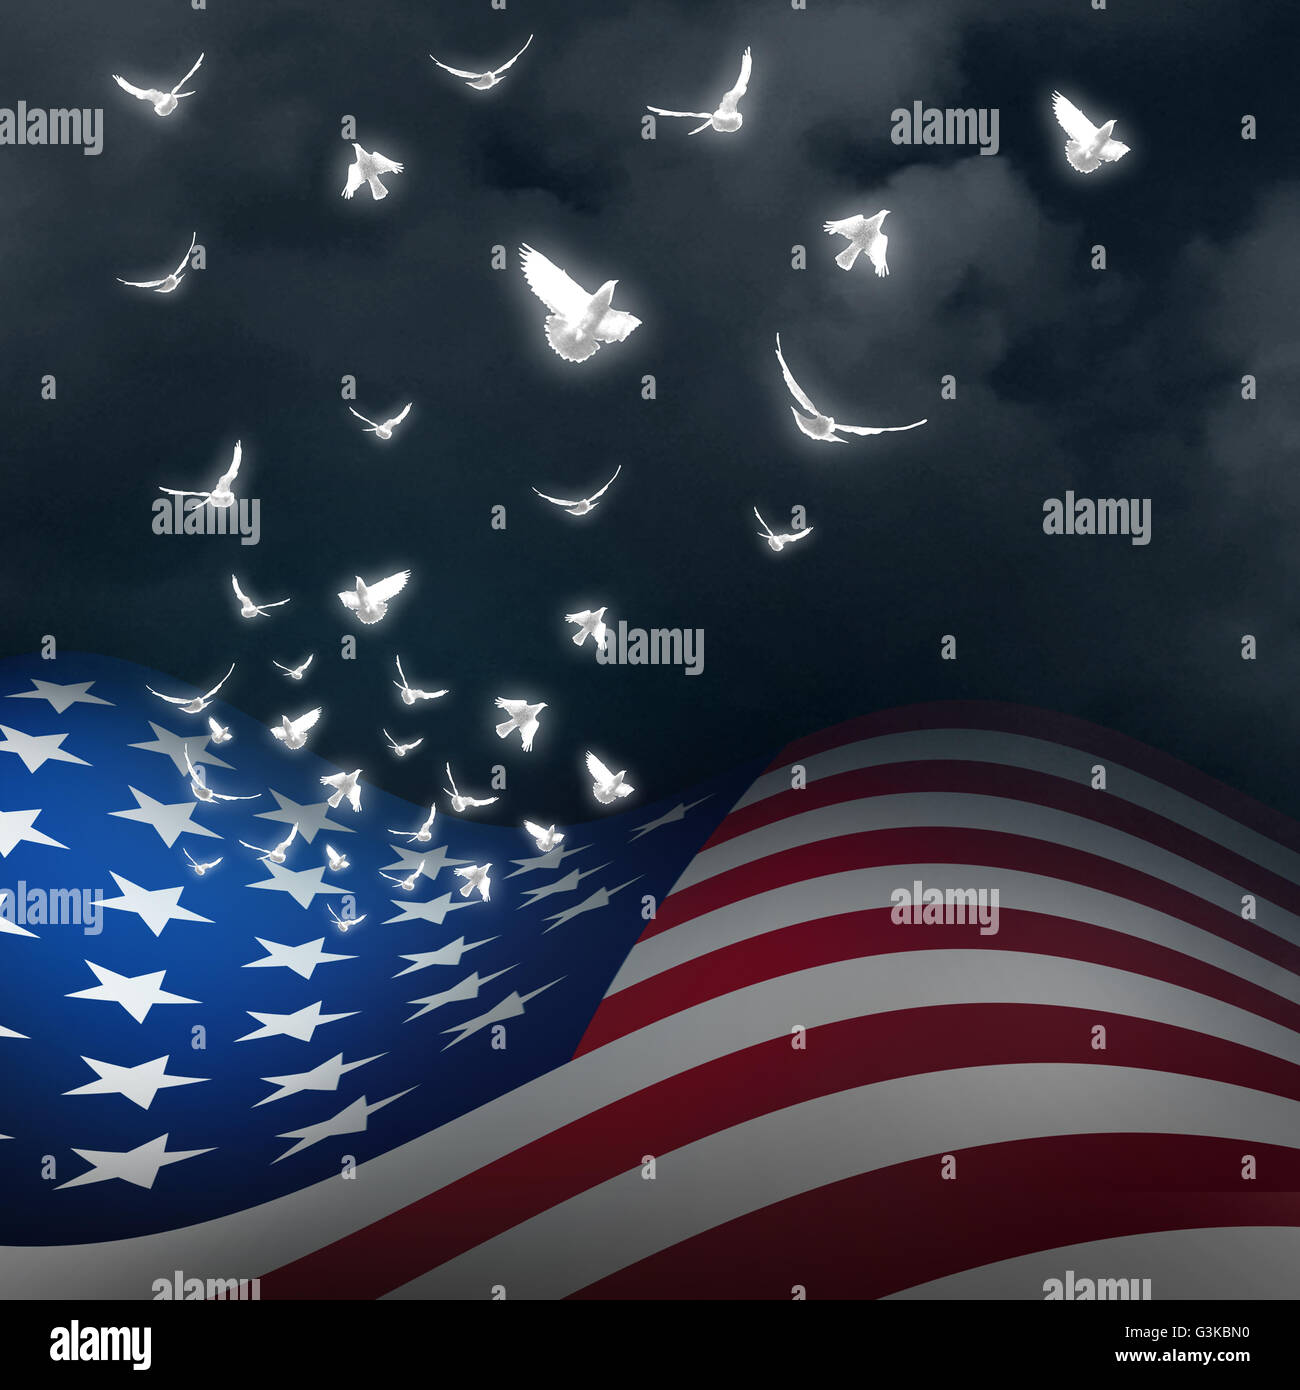 La liberté américaine concept que le drapeau des États-Unis avec les stars se transforment en colombes blanches comme un souvenir patriotique et national memorial et fête de l'indépendance avec 3D illustration éléments. Banque D'Images